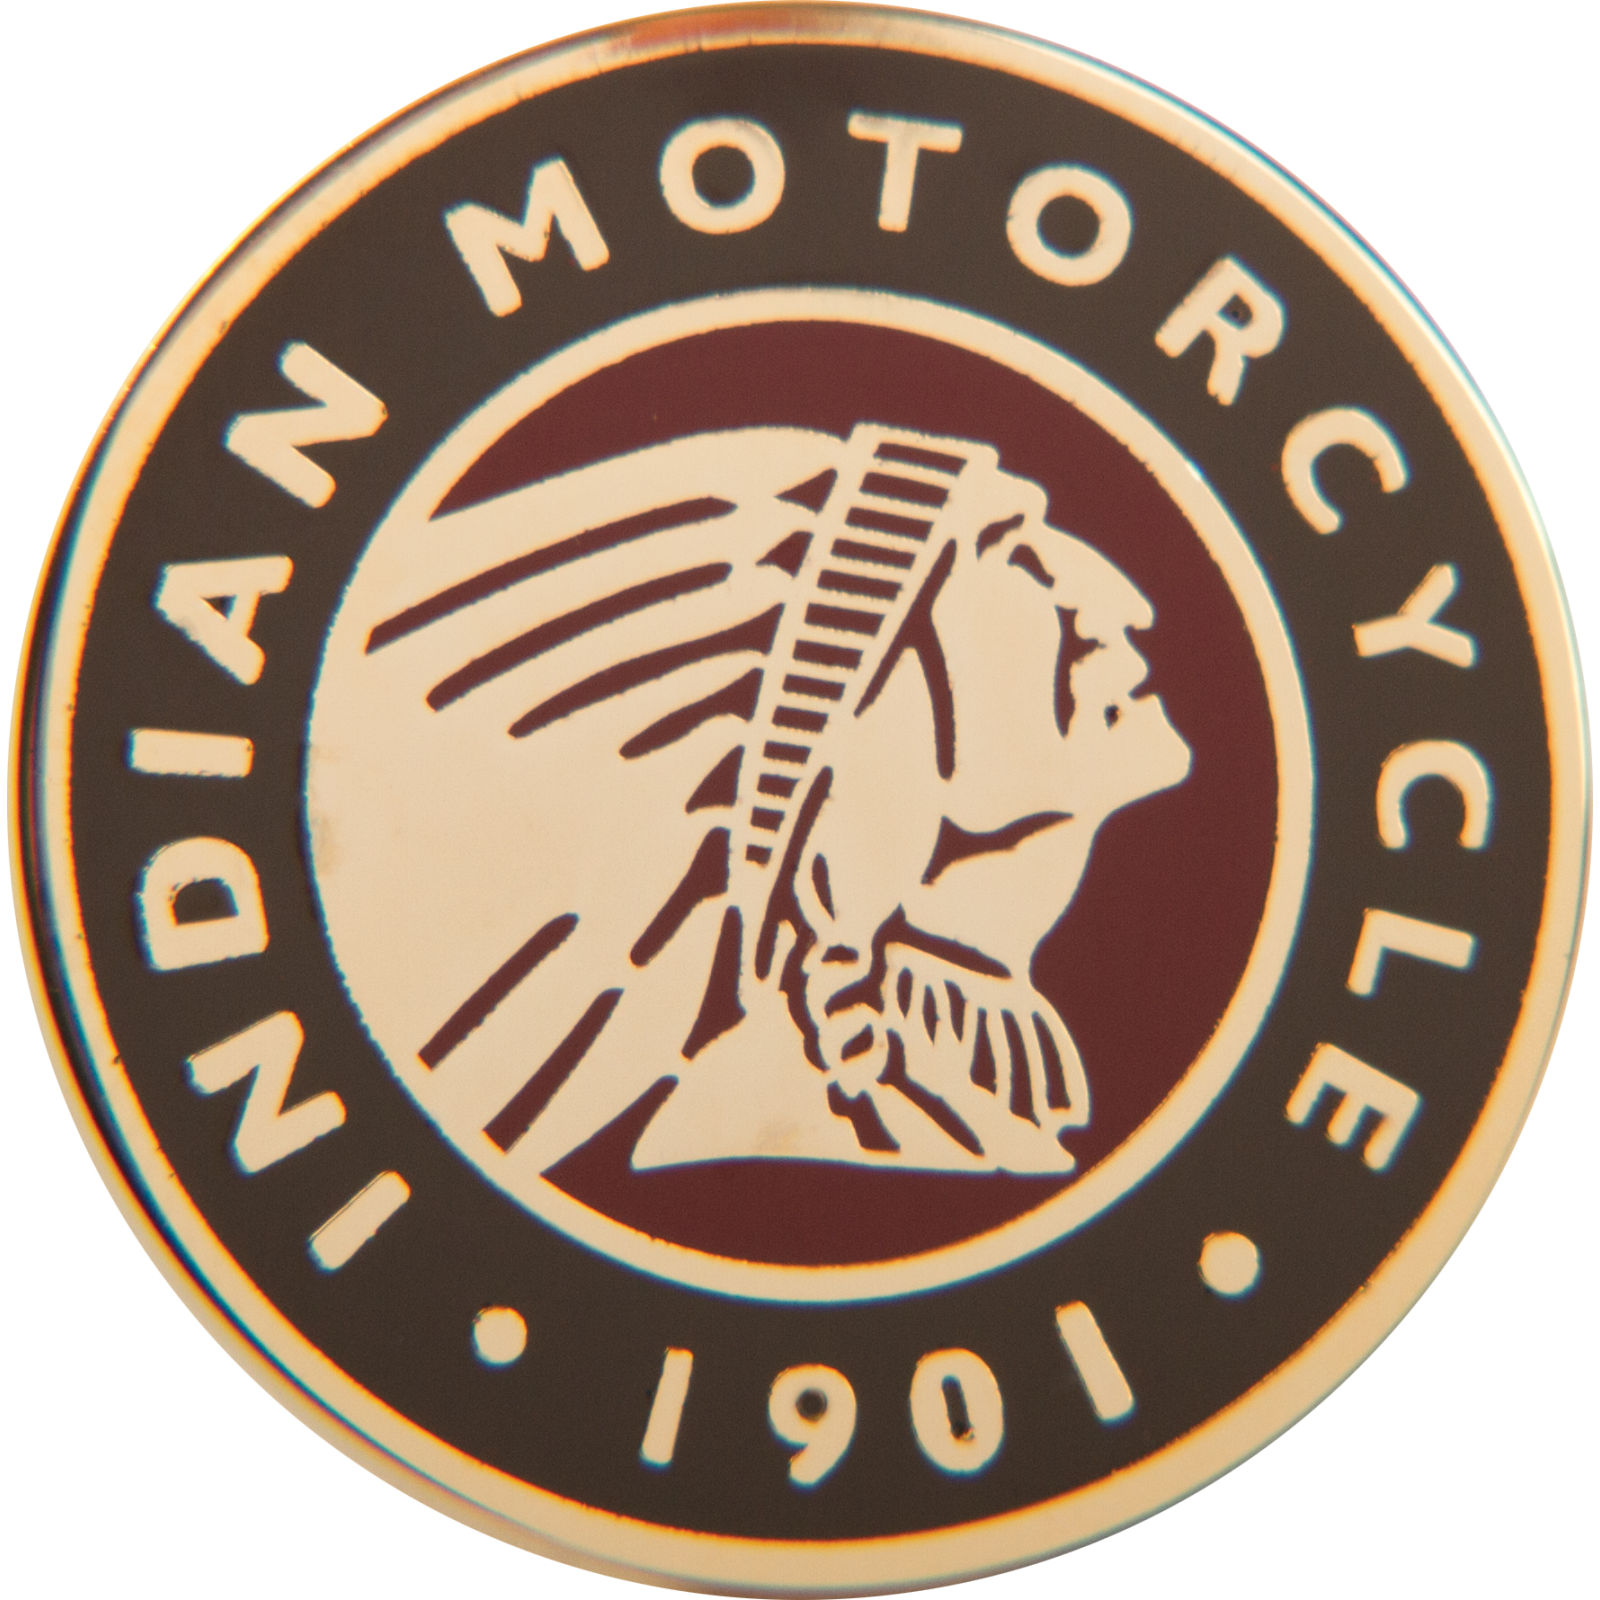  Indian  motorcycle  Logos 